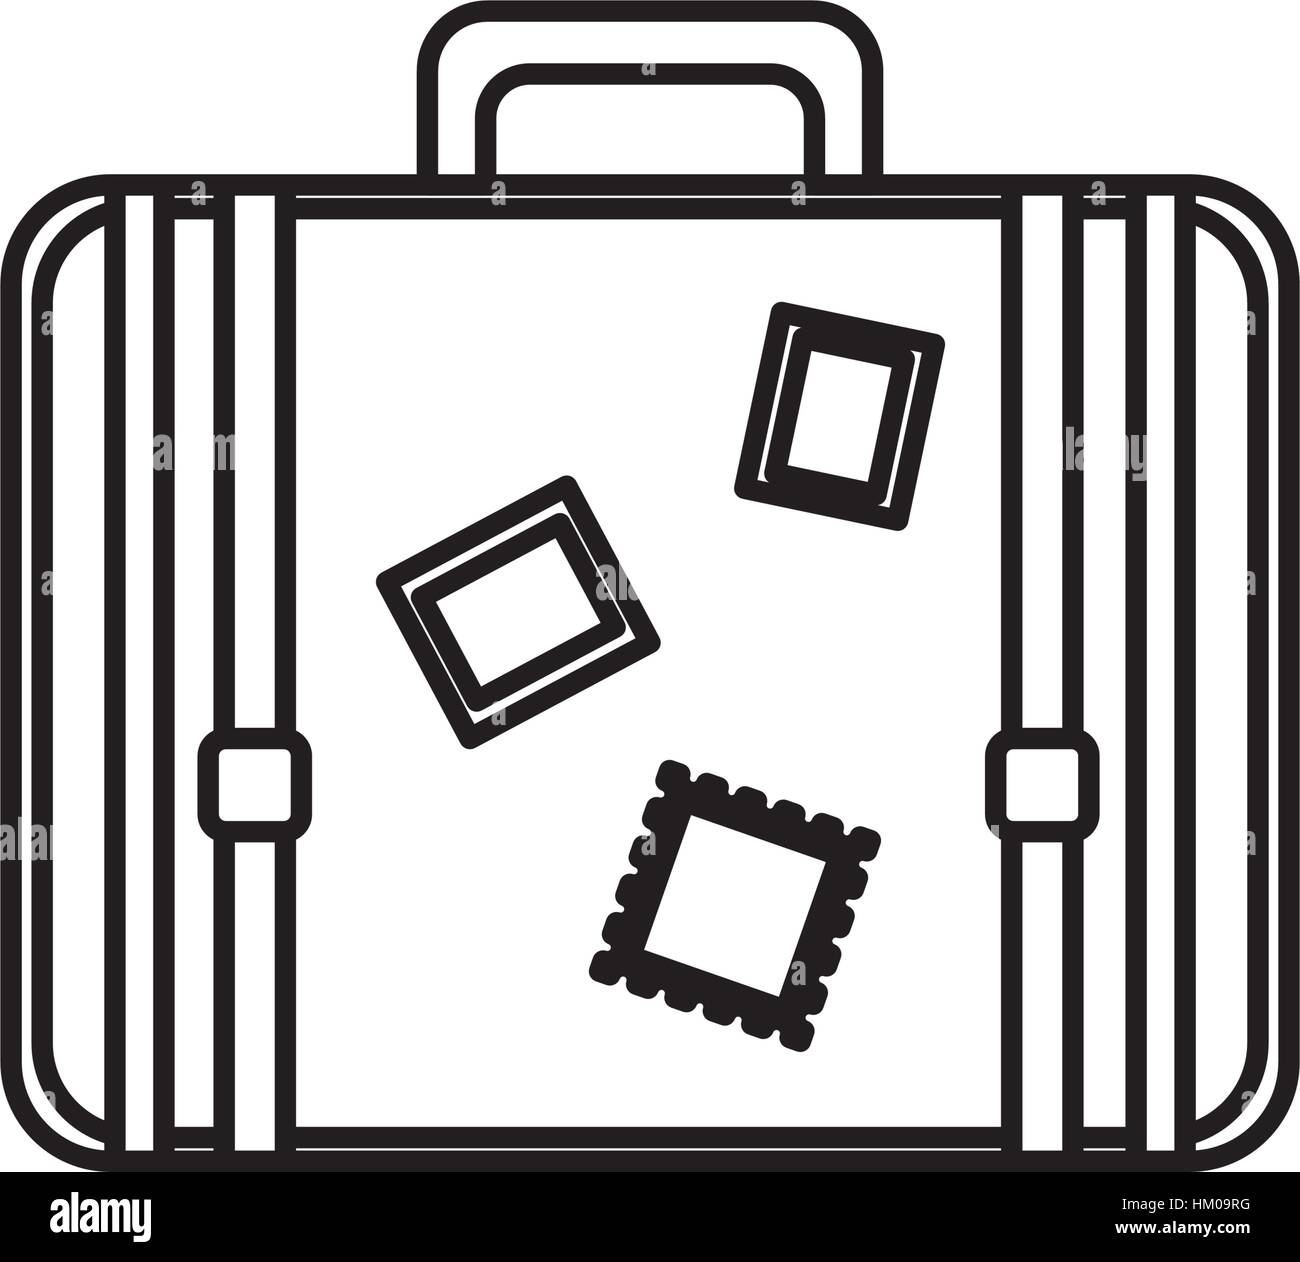 Ilustración de maleta de viaje aislado en blanco